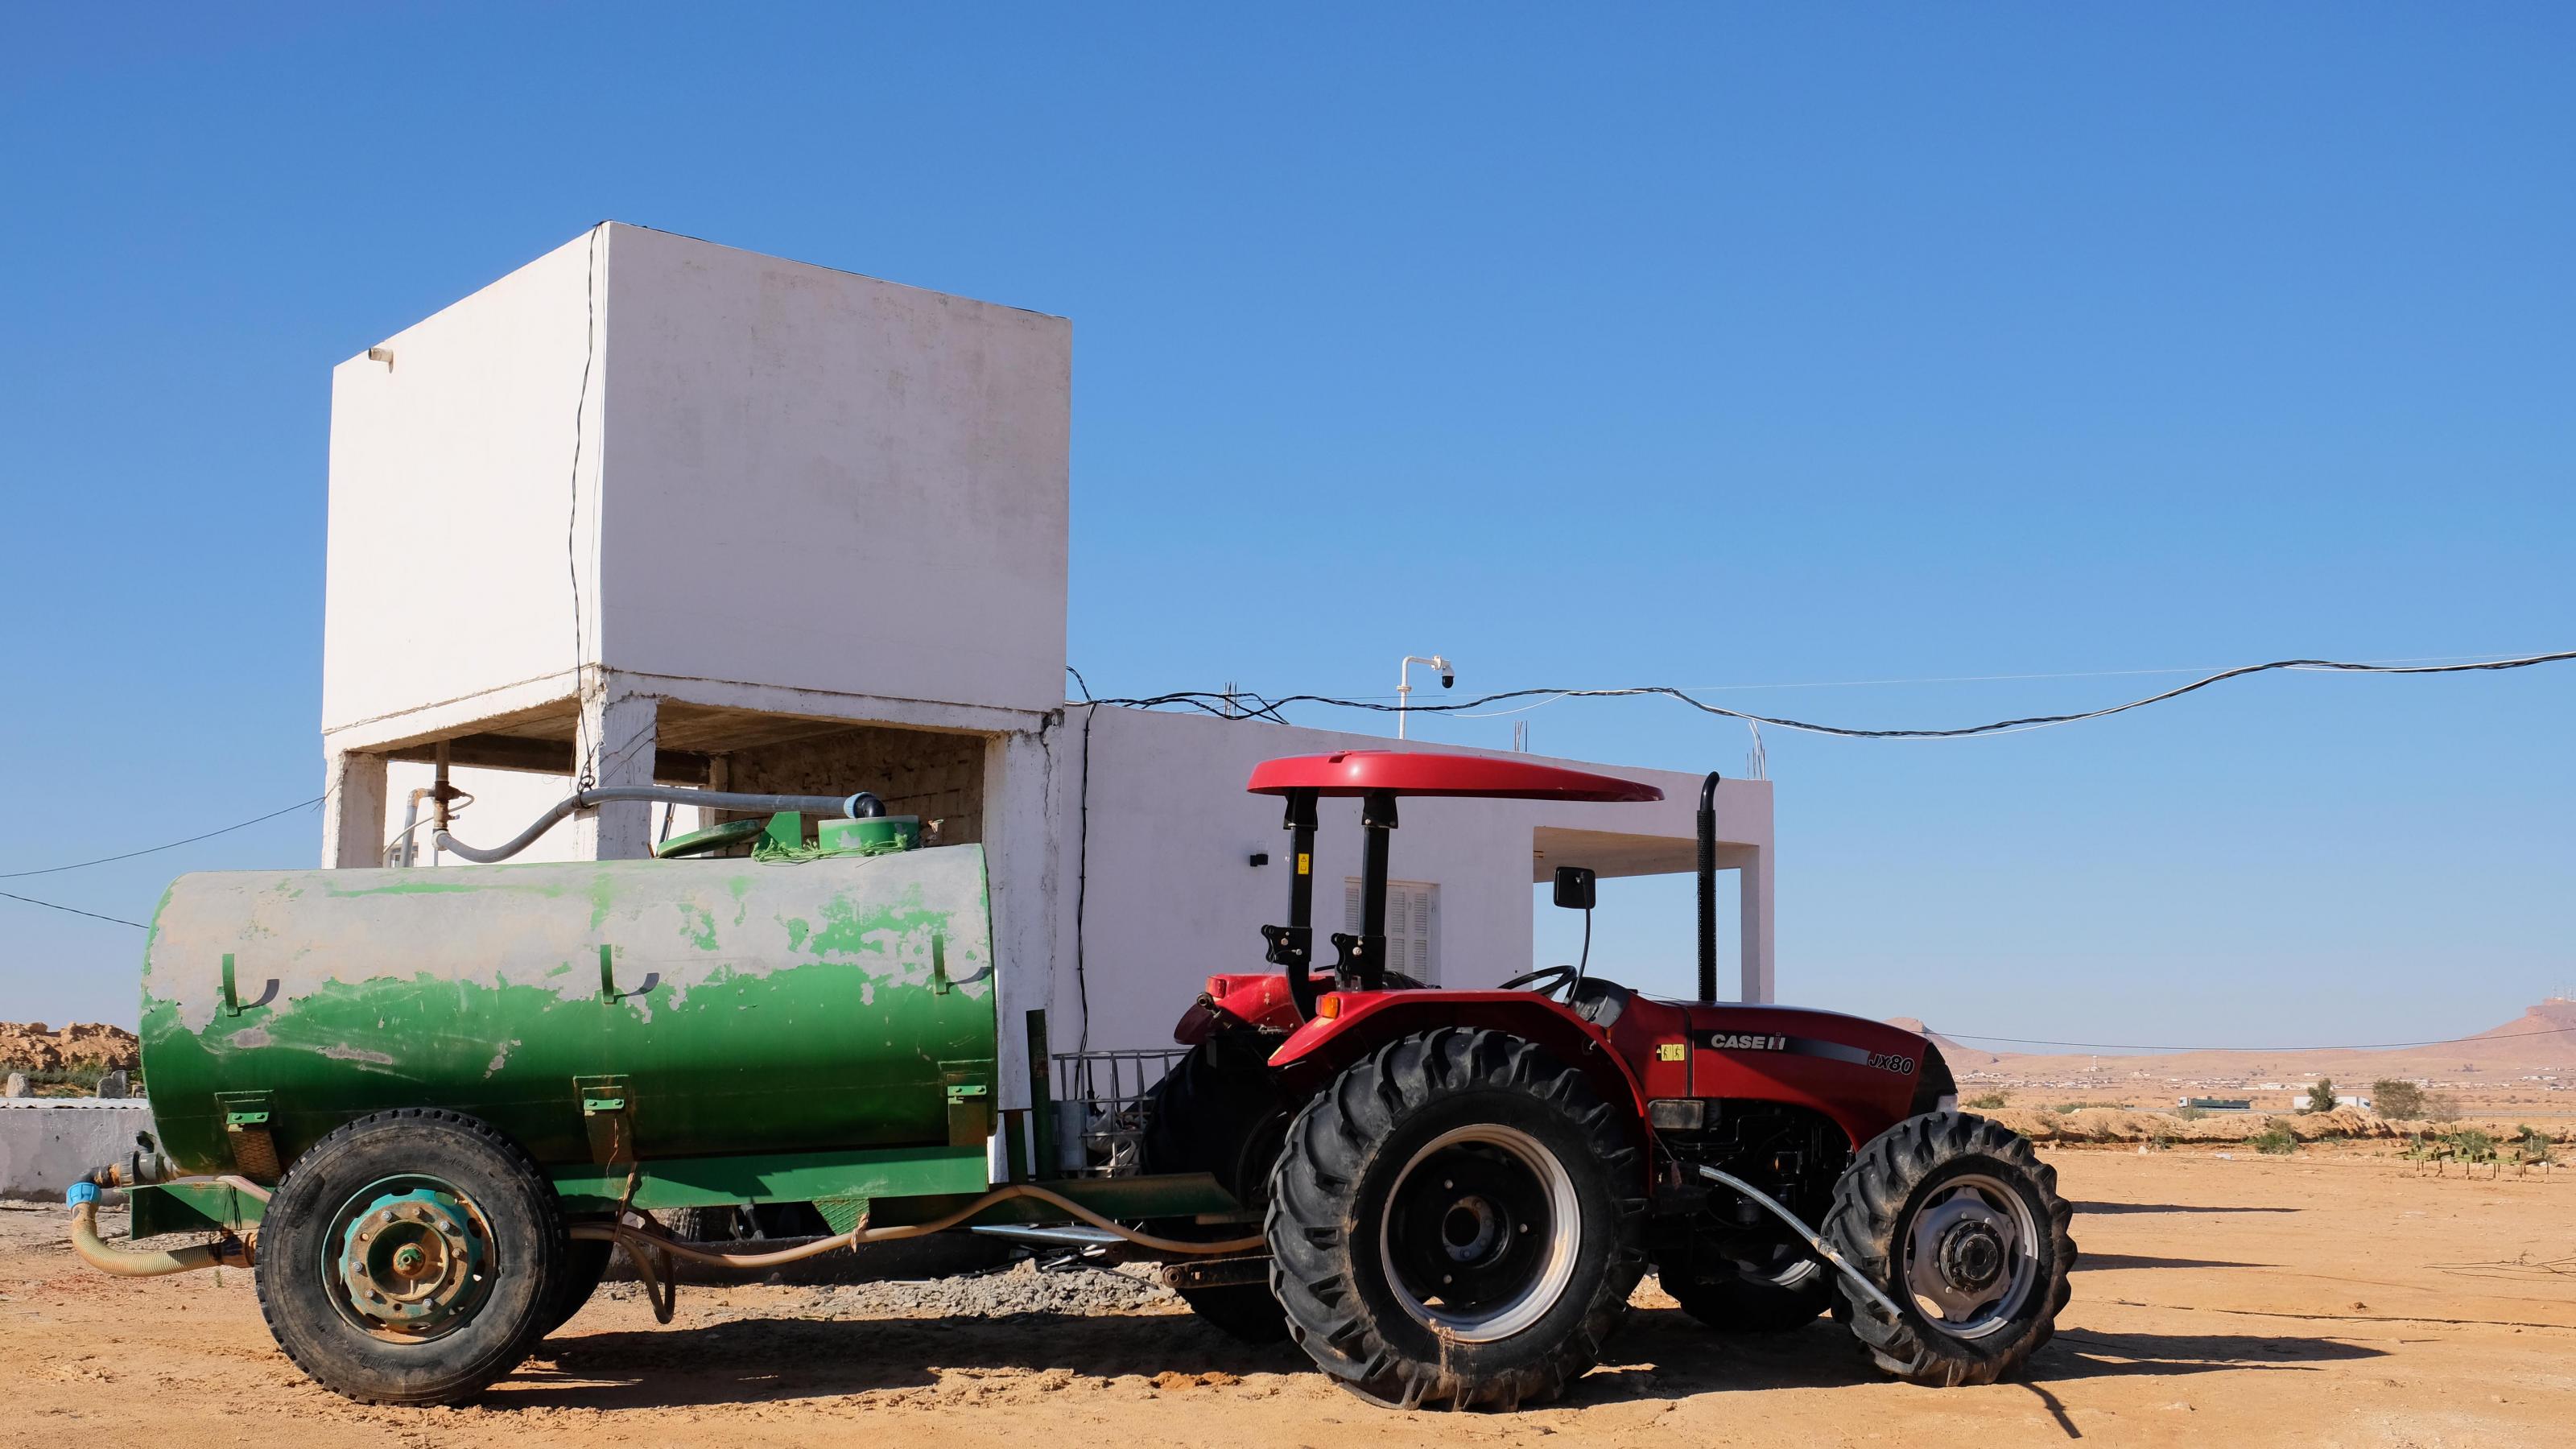 Ein weißer, quadratischer Wasserturm, vor dem ein roter Traktor mit grünem Anhänger steht.